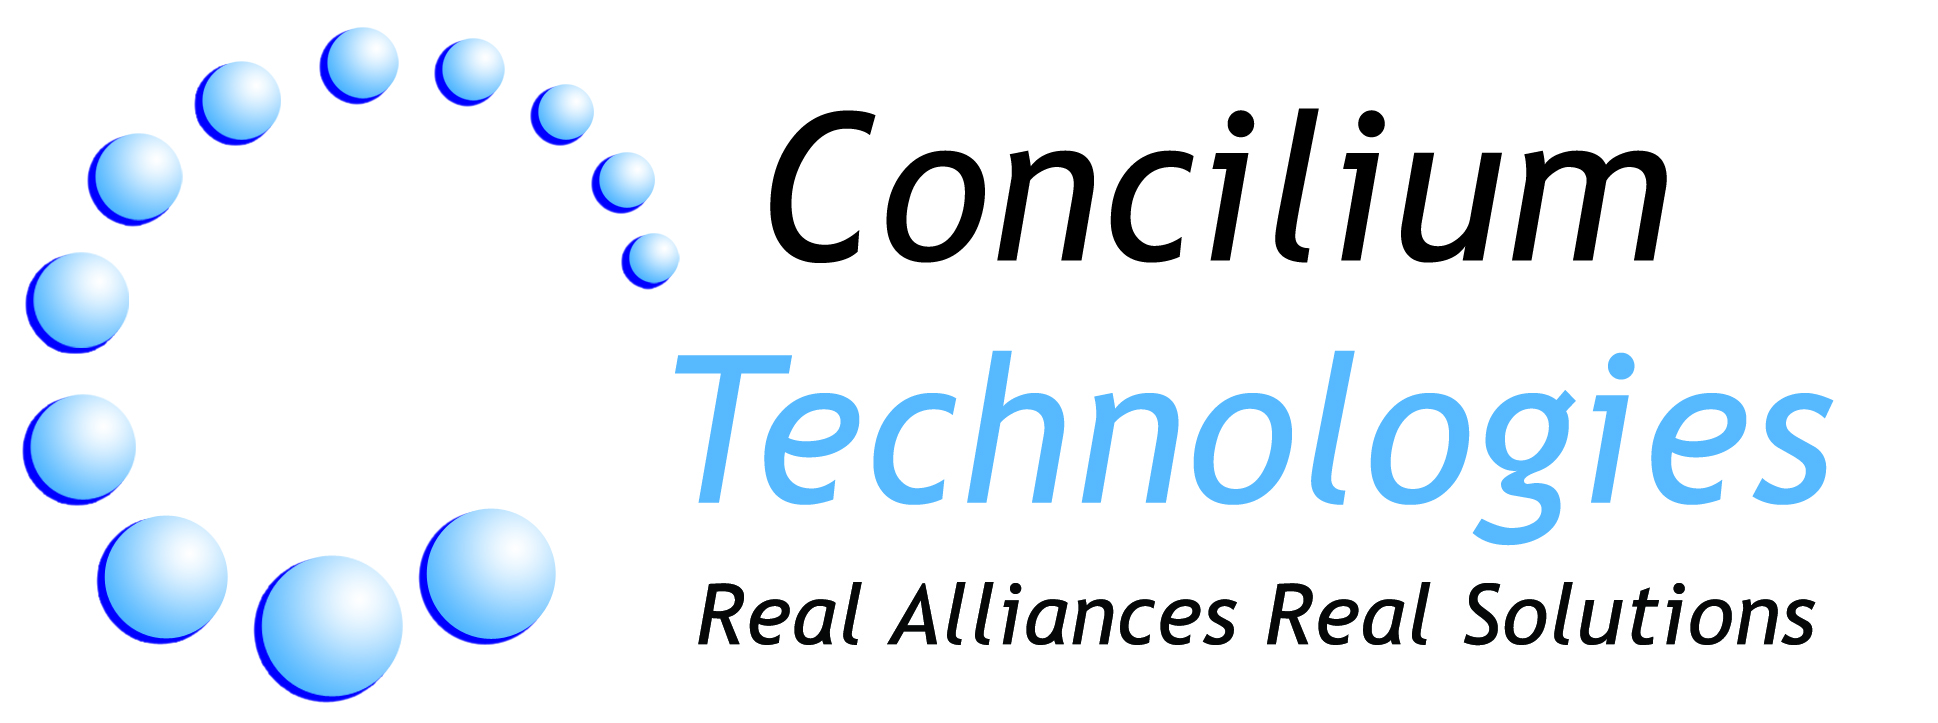 Concilium Technologies